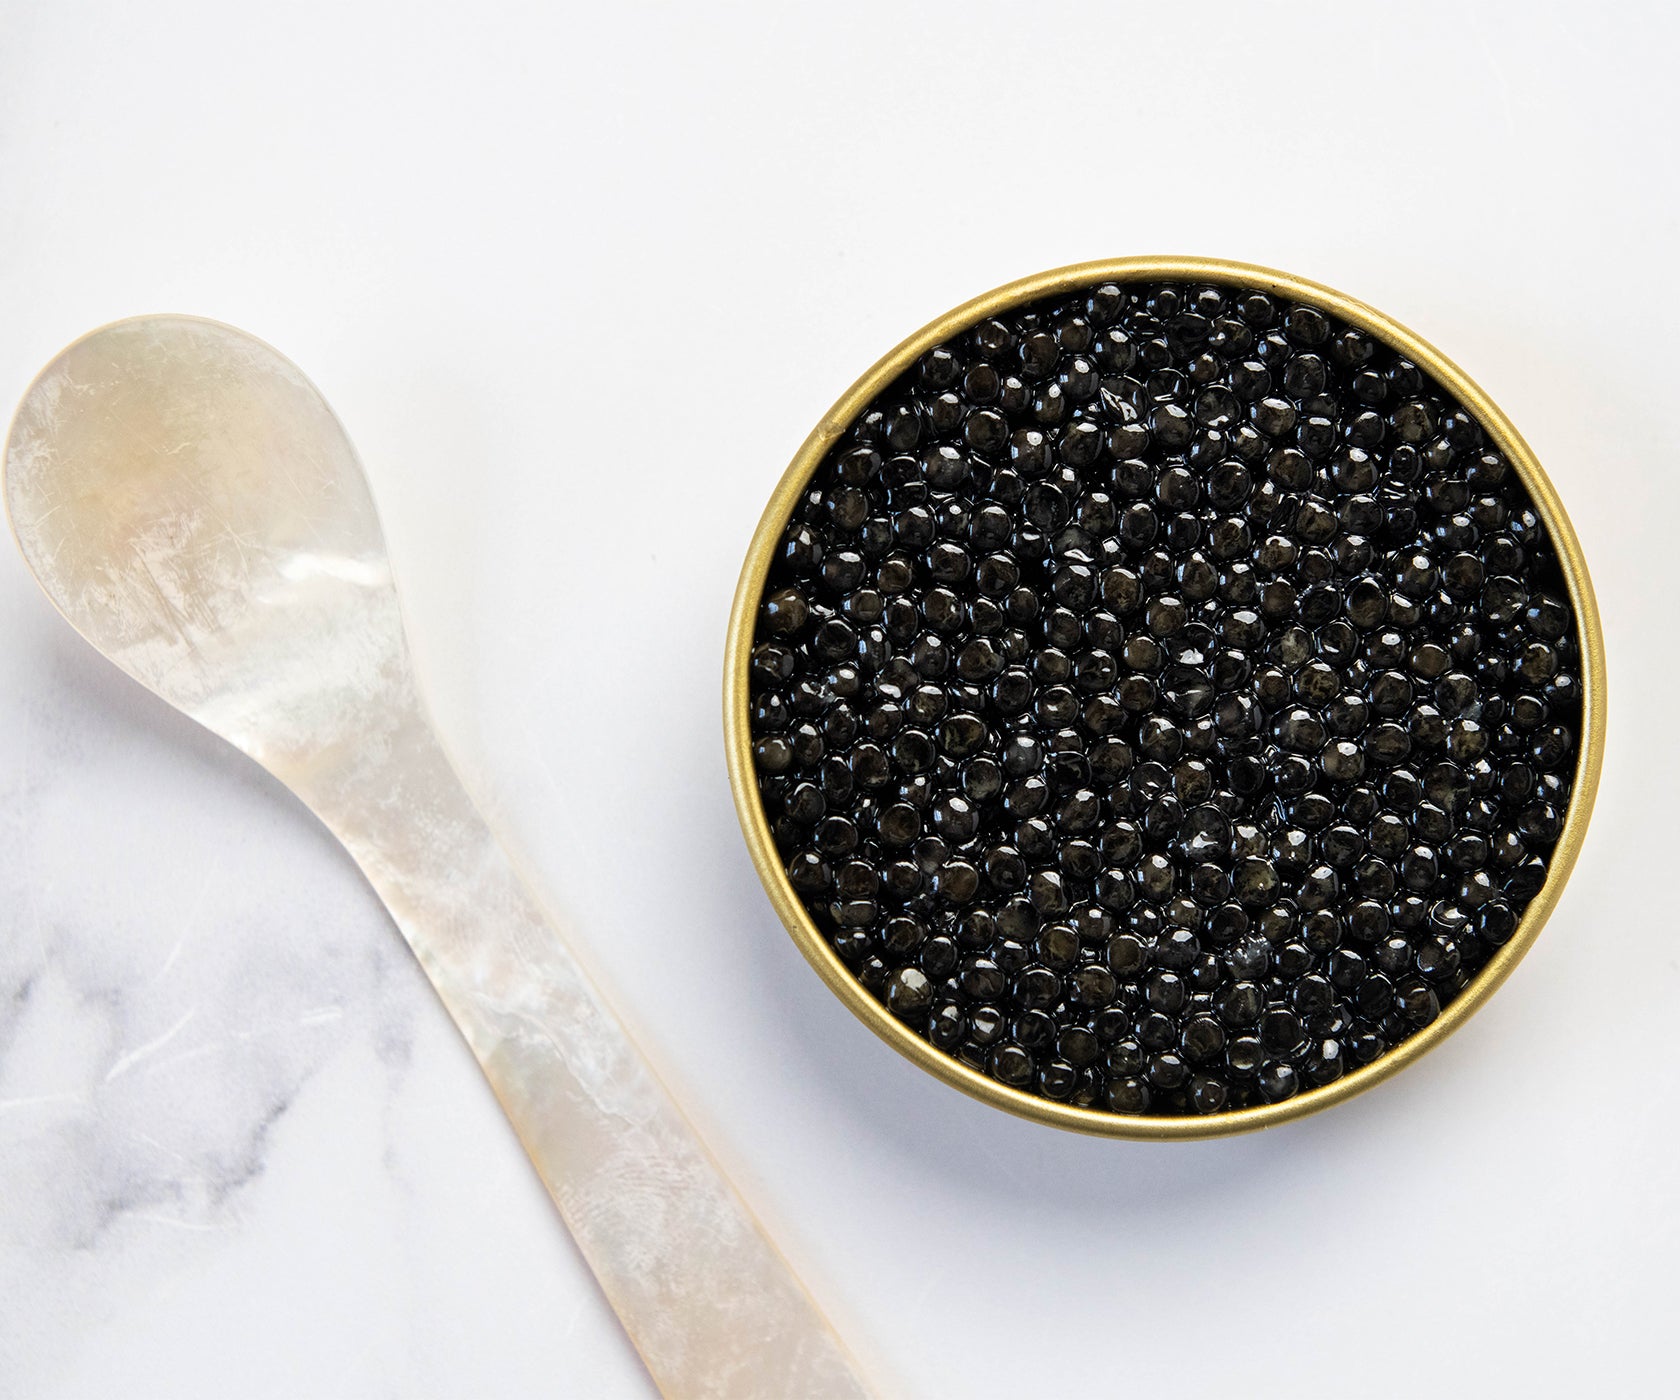 Adamas White Sturgeon Caviar from Pandino, Italy